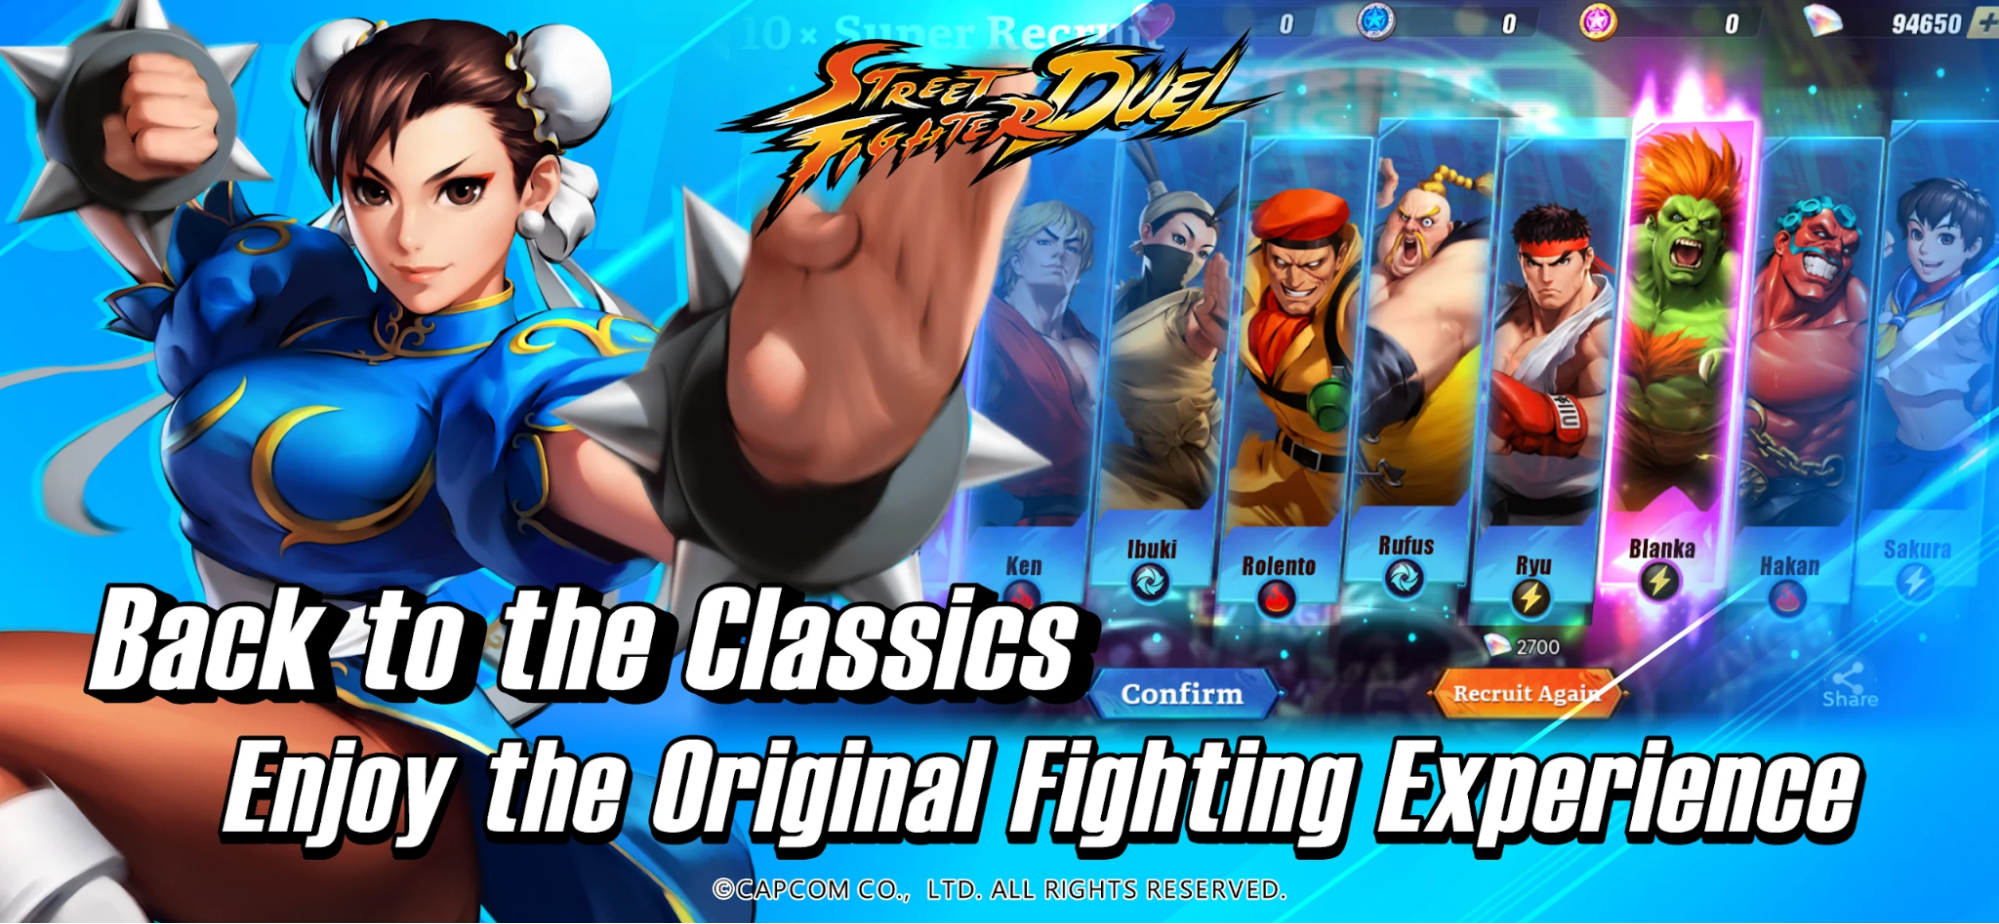 Fordern Sie die kostenlosen Belohnungen mit den unten aufgeführten Street Fighter Duel-Codes an 